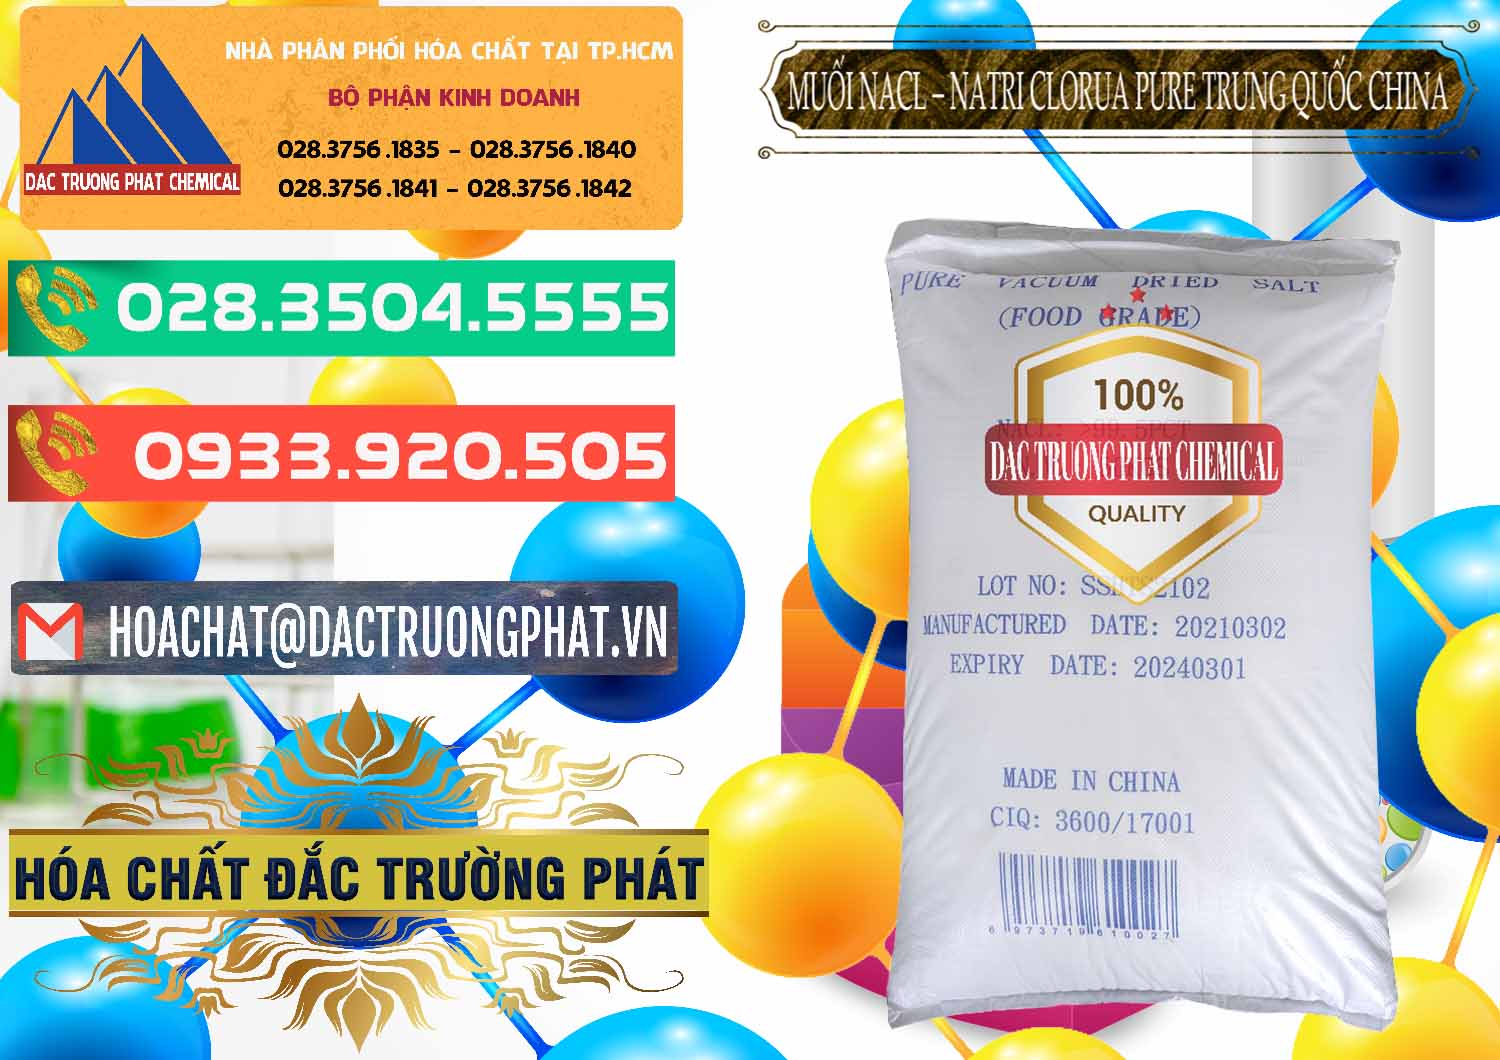 Đơn vị bán _ cung cấp Muối NaCL – Sodium Chloride Pure Trung Quốc China - 0230 - Nơi phân phối _ bán hóa chất tại TP.HCM - congtyhoachat.com.vn